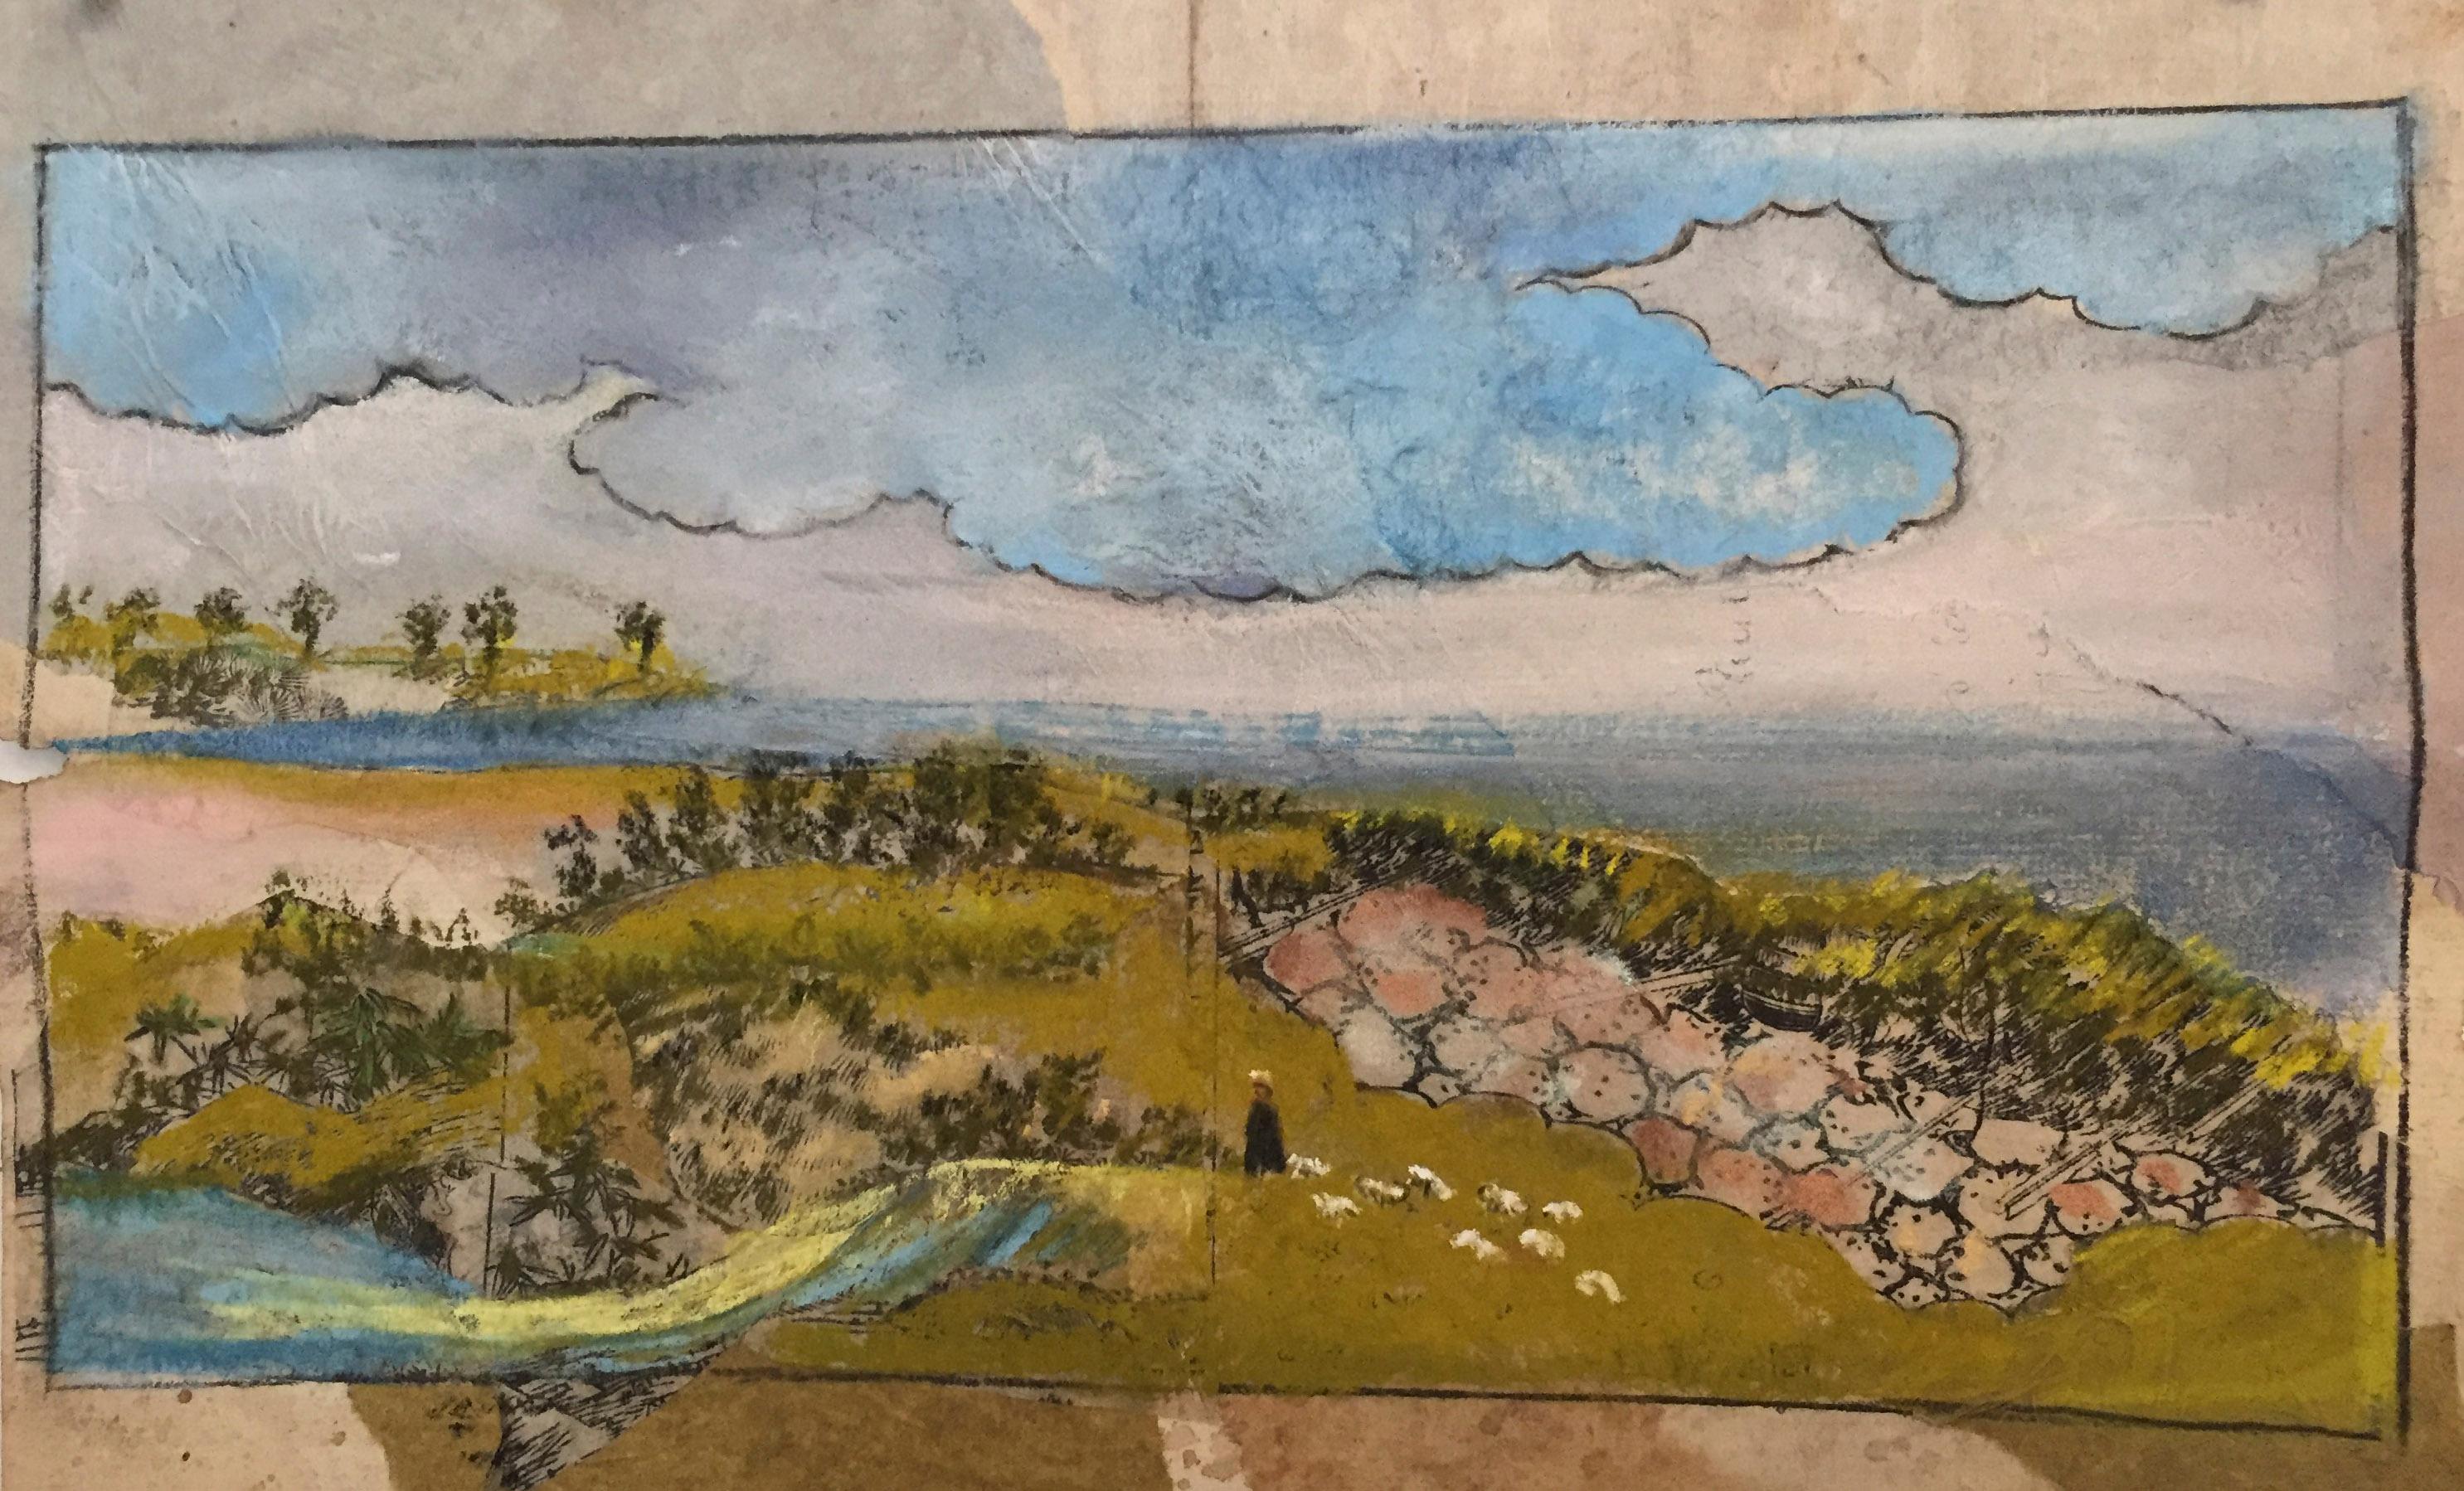 Landscape Painting Katherine Bakhoum-Tisne - "Hilltop" - Peinture multimédia de Katherine Bakhoum Tisné (8 x 12 pouces)